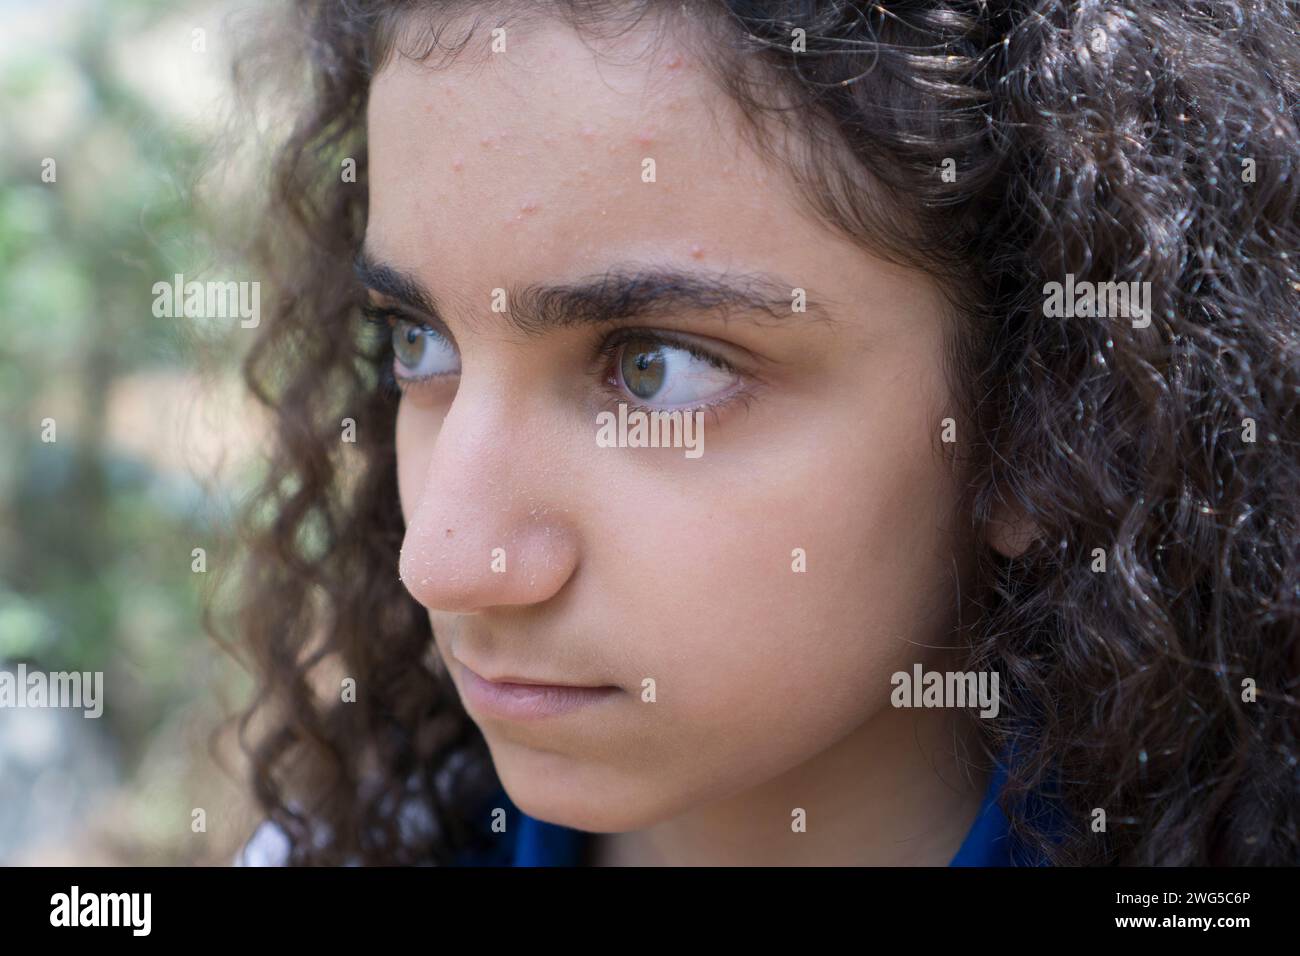 Primo piano di una ragazza mediorientale con l'acne sulla fronte che guarda lontano Foto Stock